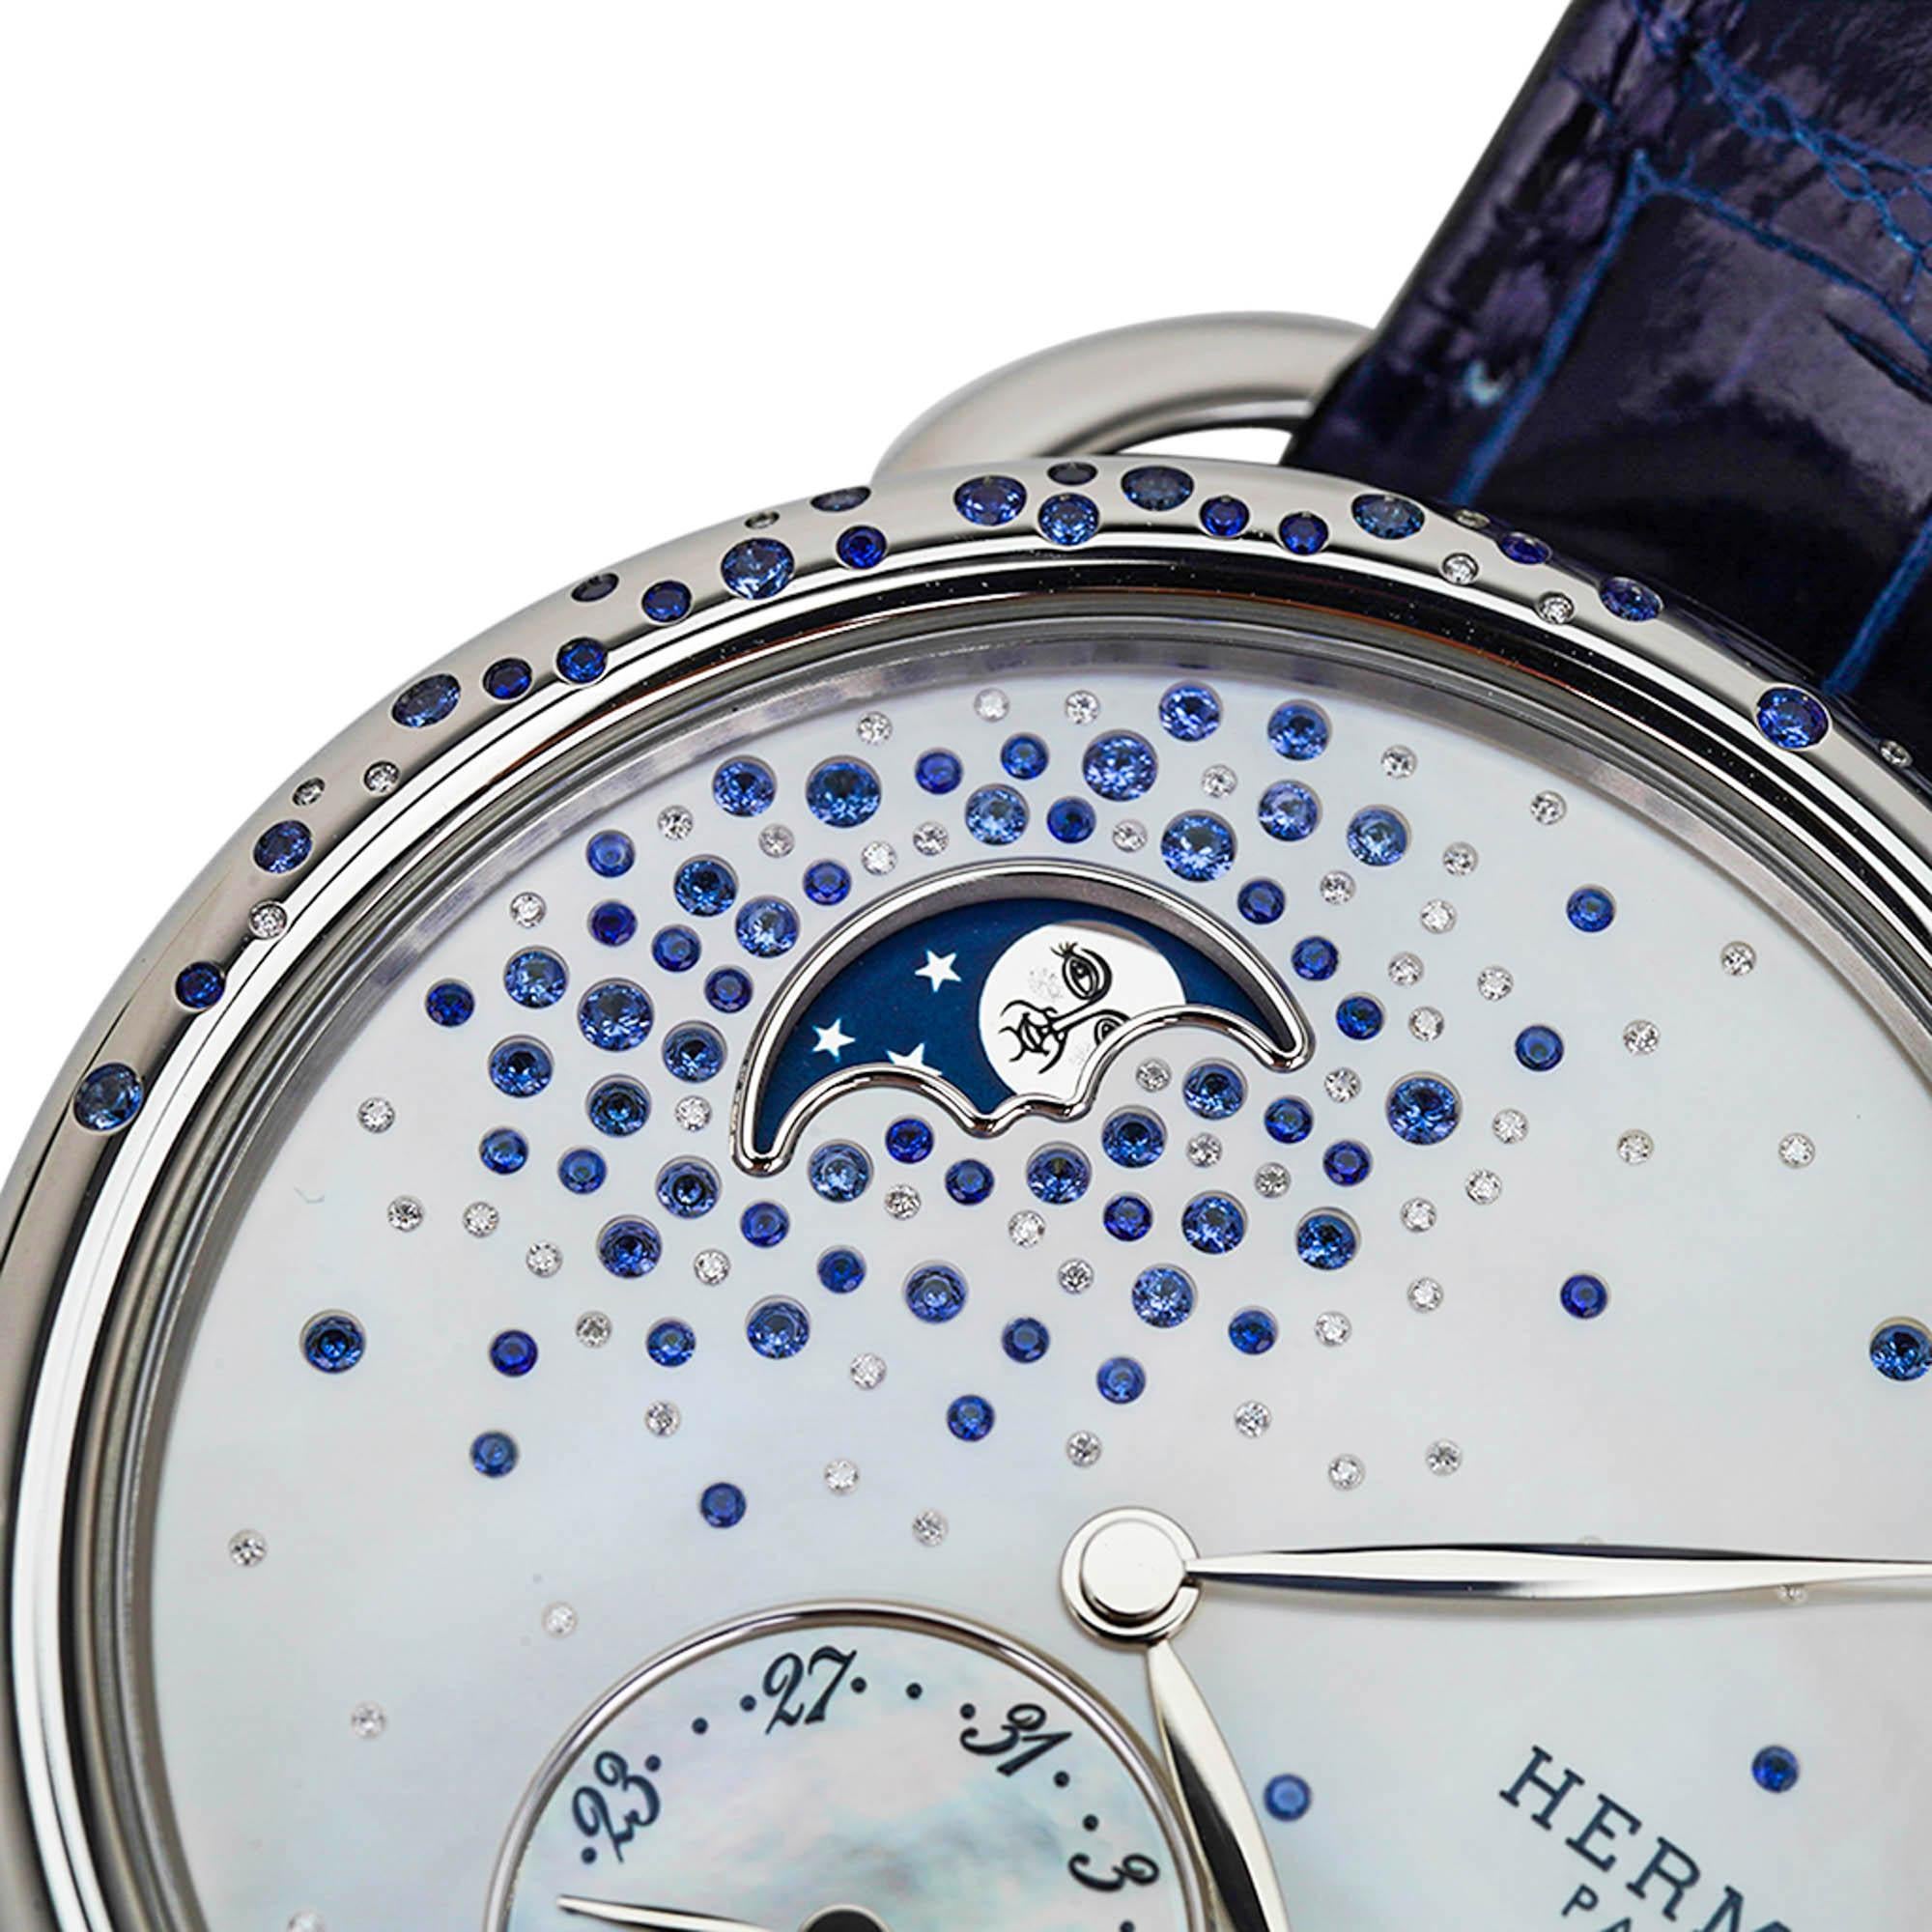 Mightychic propose une montre Hermes Arceau Petite Lune présentée dans le grand modèle de 38 mm.
Cette magnifique montre sertie de diamants et de saphirs est parsemée de pierres précieuses sur la lunette et sur le cadran.
cadran en